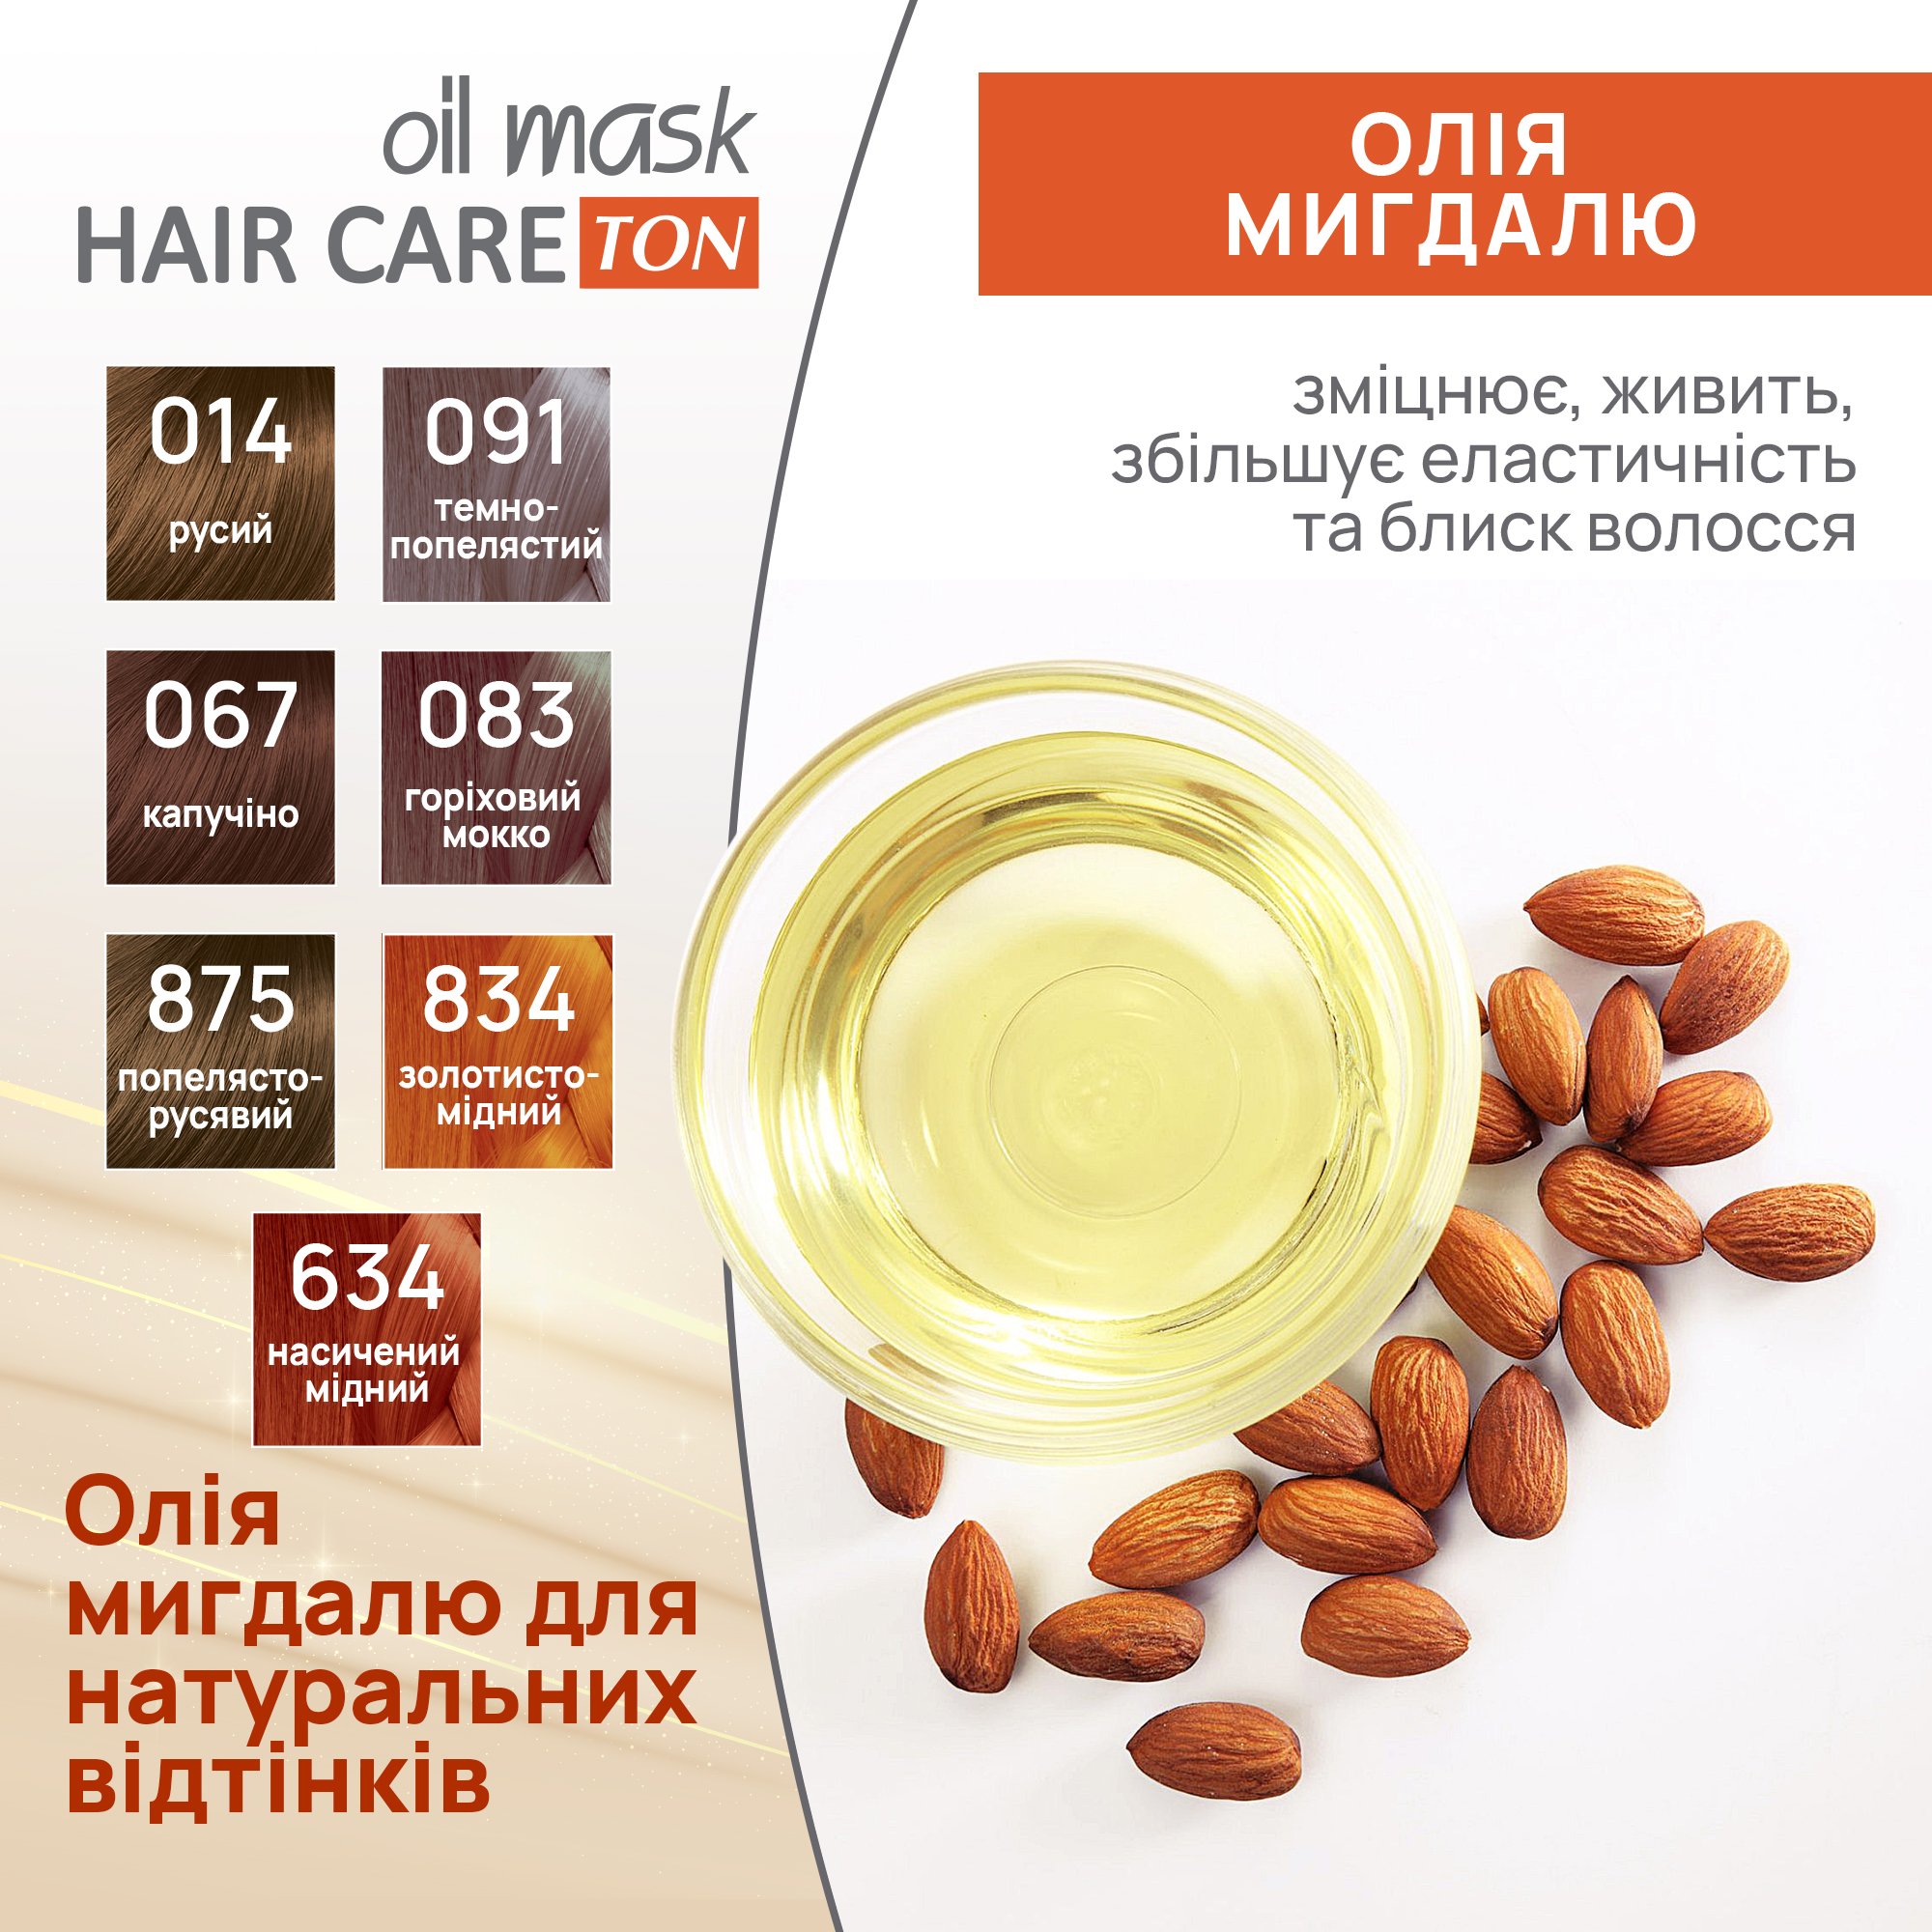 Тонирующая маска для волос Acme Color Hair Care Ton oil mask, тон 083, ореховый мокко, 30 мл - фото 6